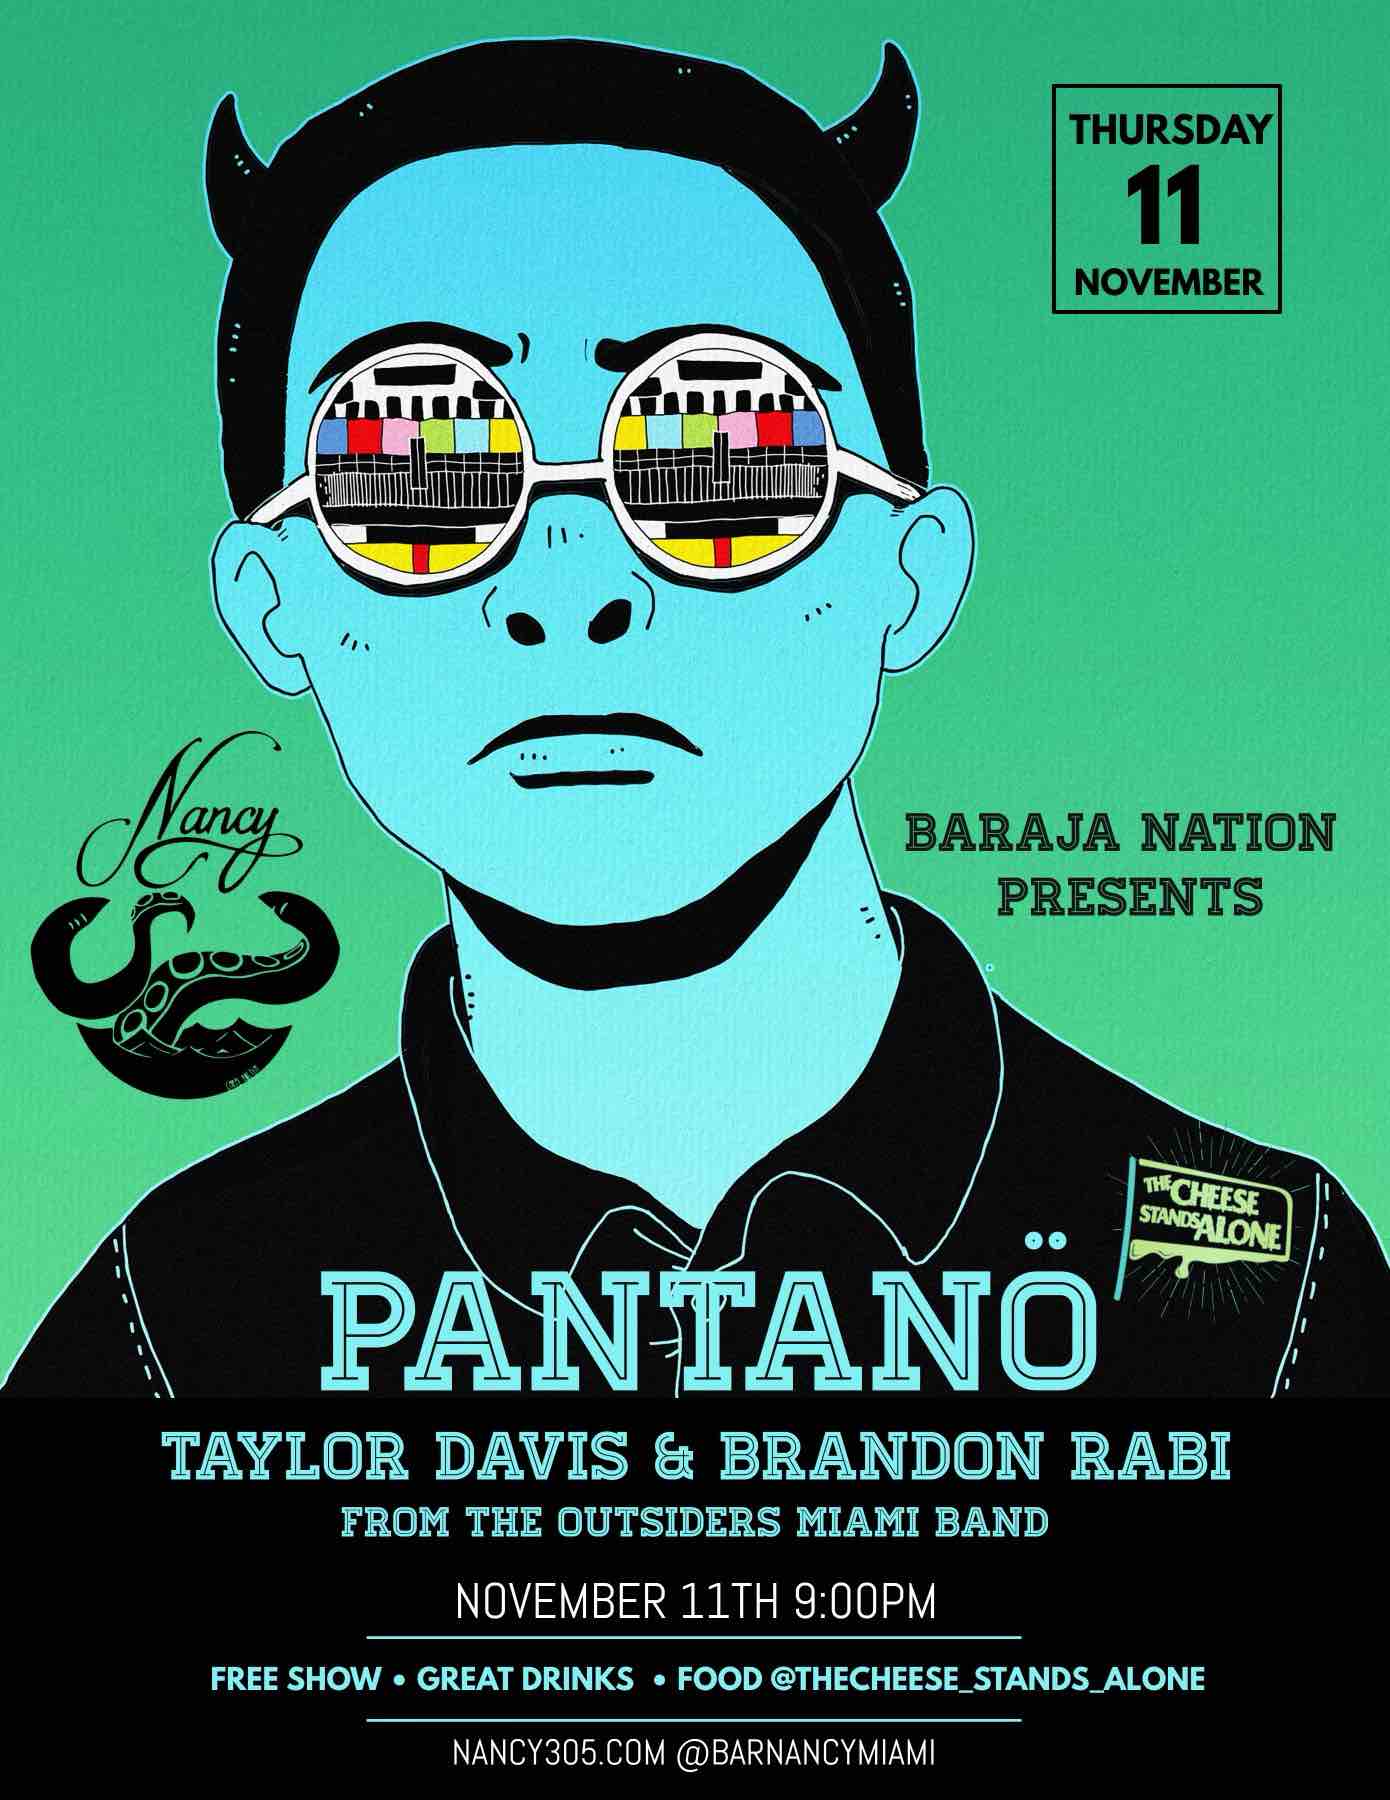 BARAJA NATION Presents PANTANO - TAYLOR DAVIS & BRANDON RABI at BAR NANCY